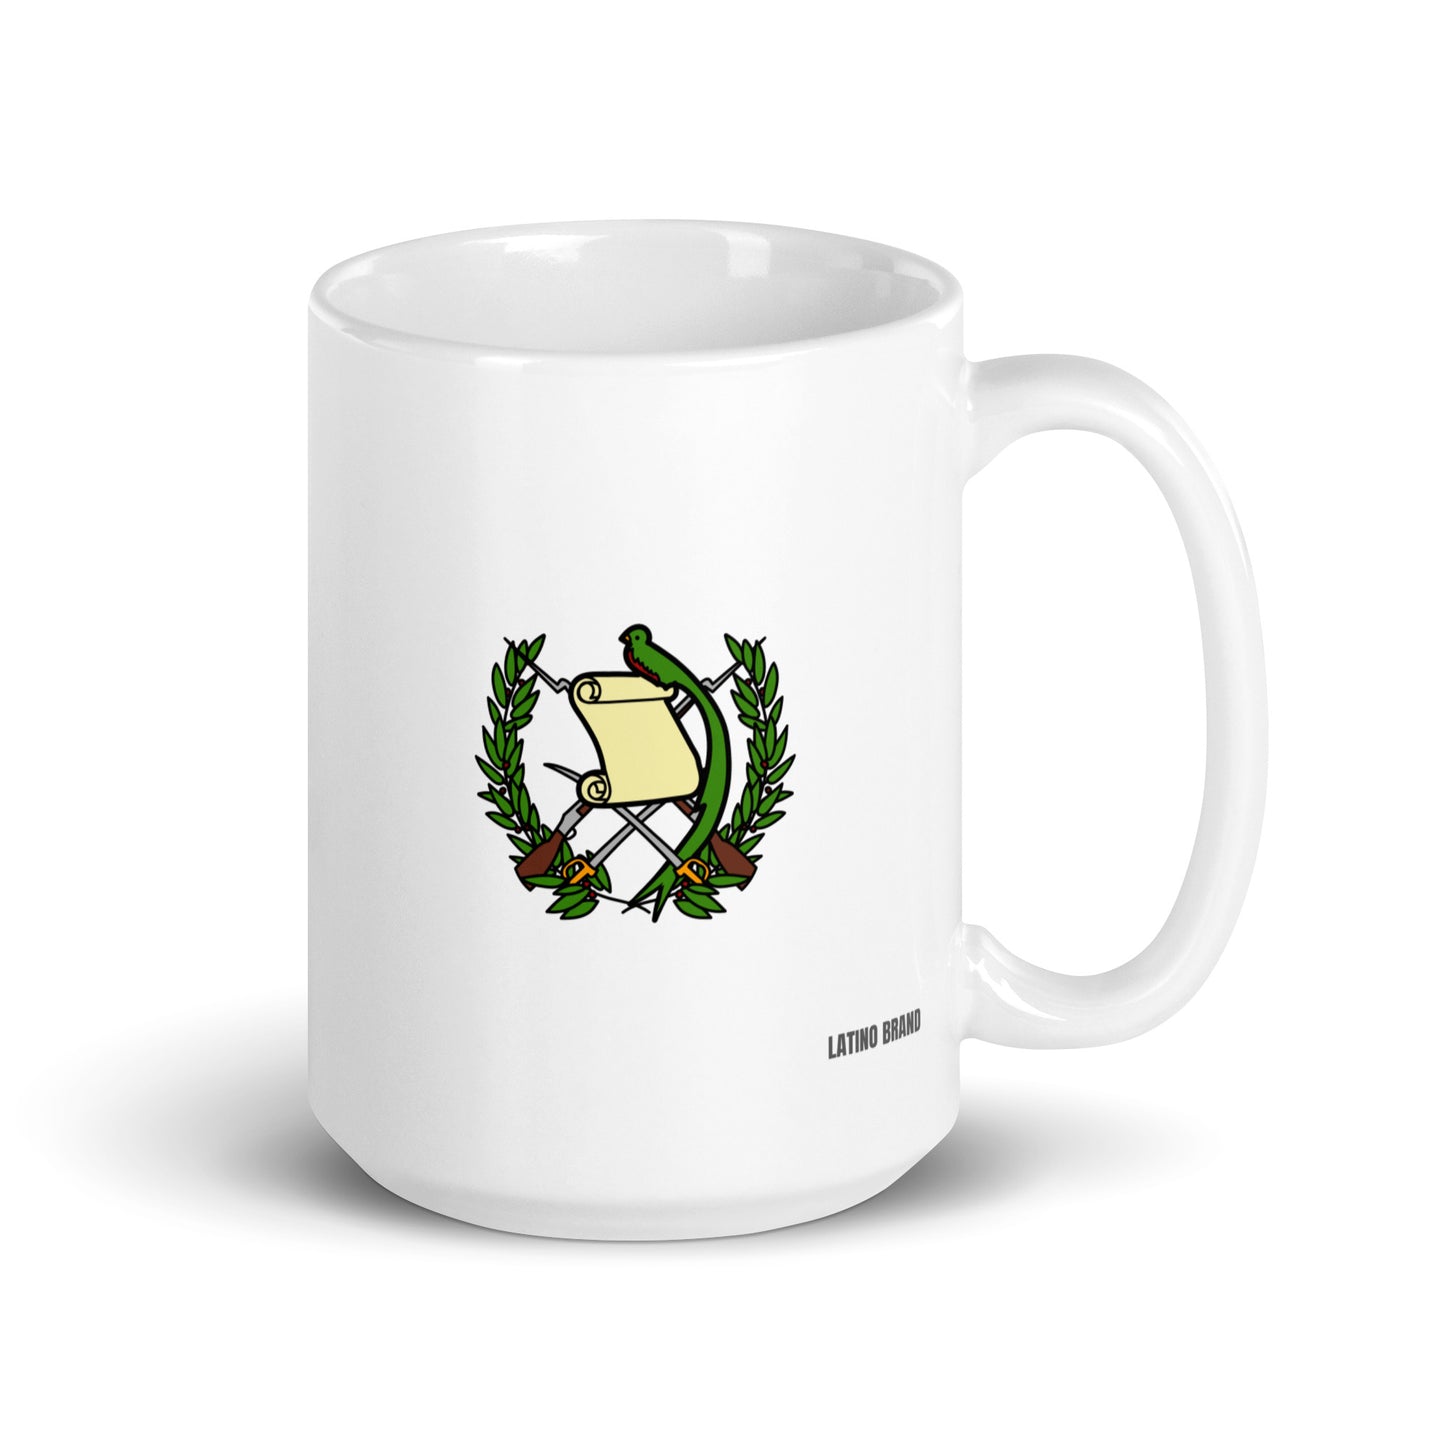 🇬🇹 Guatemala (Escudo y Bandera) Coffee Mug